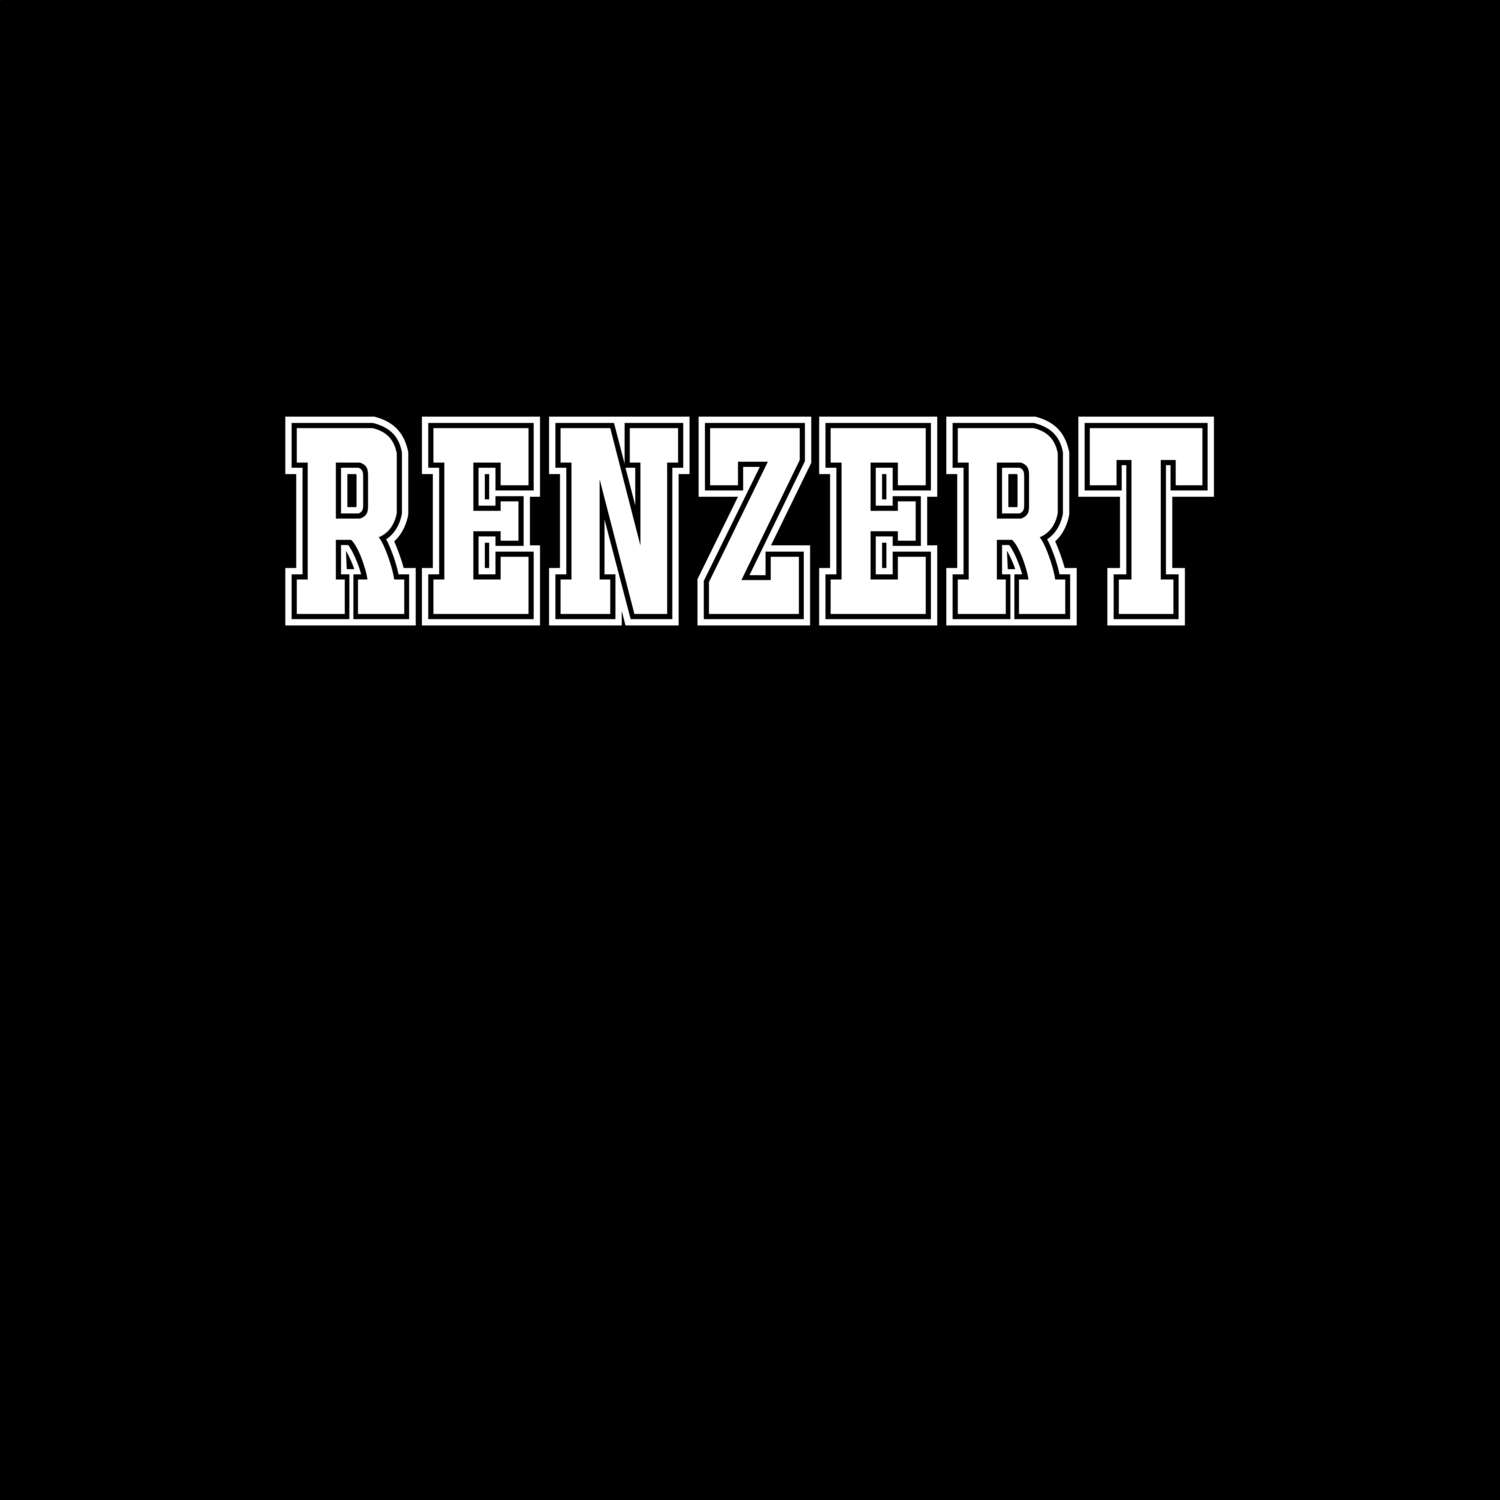 Renzert T-Shirt »Classic«